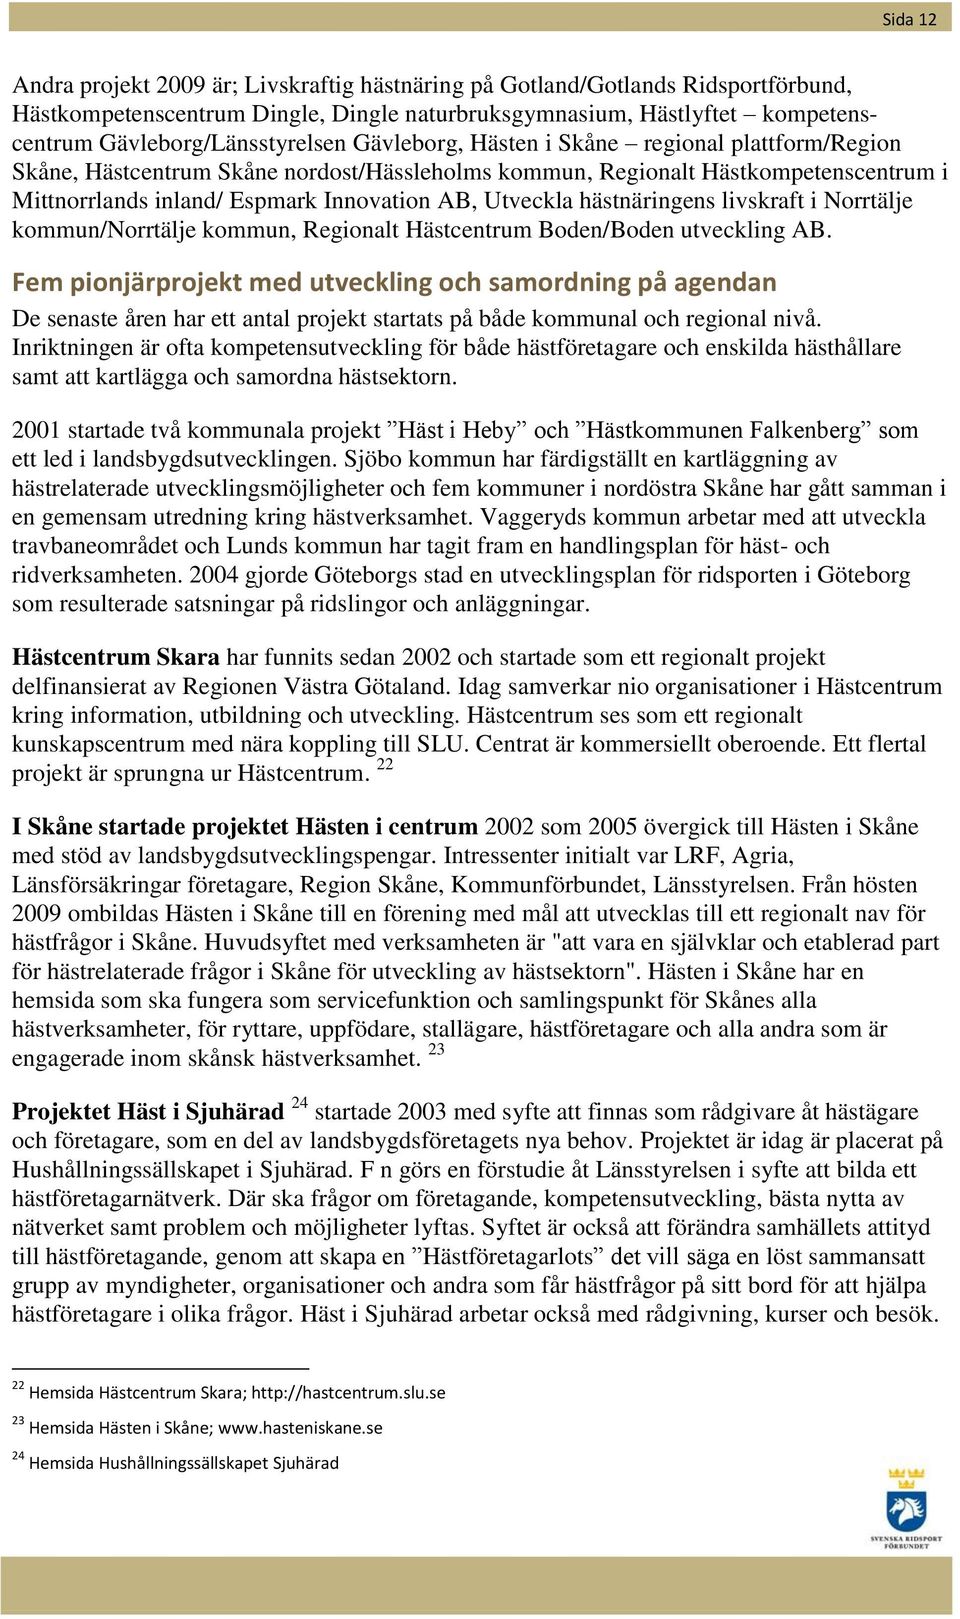 Innovation AB, Utveckla hästnäringens livskraft i Norrtälje kommun/norrtälje kommun, Regionalt Hästcentrum Boden/Boden utveckling AB.